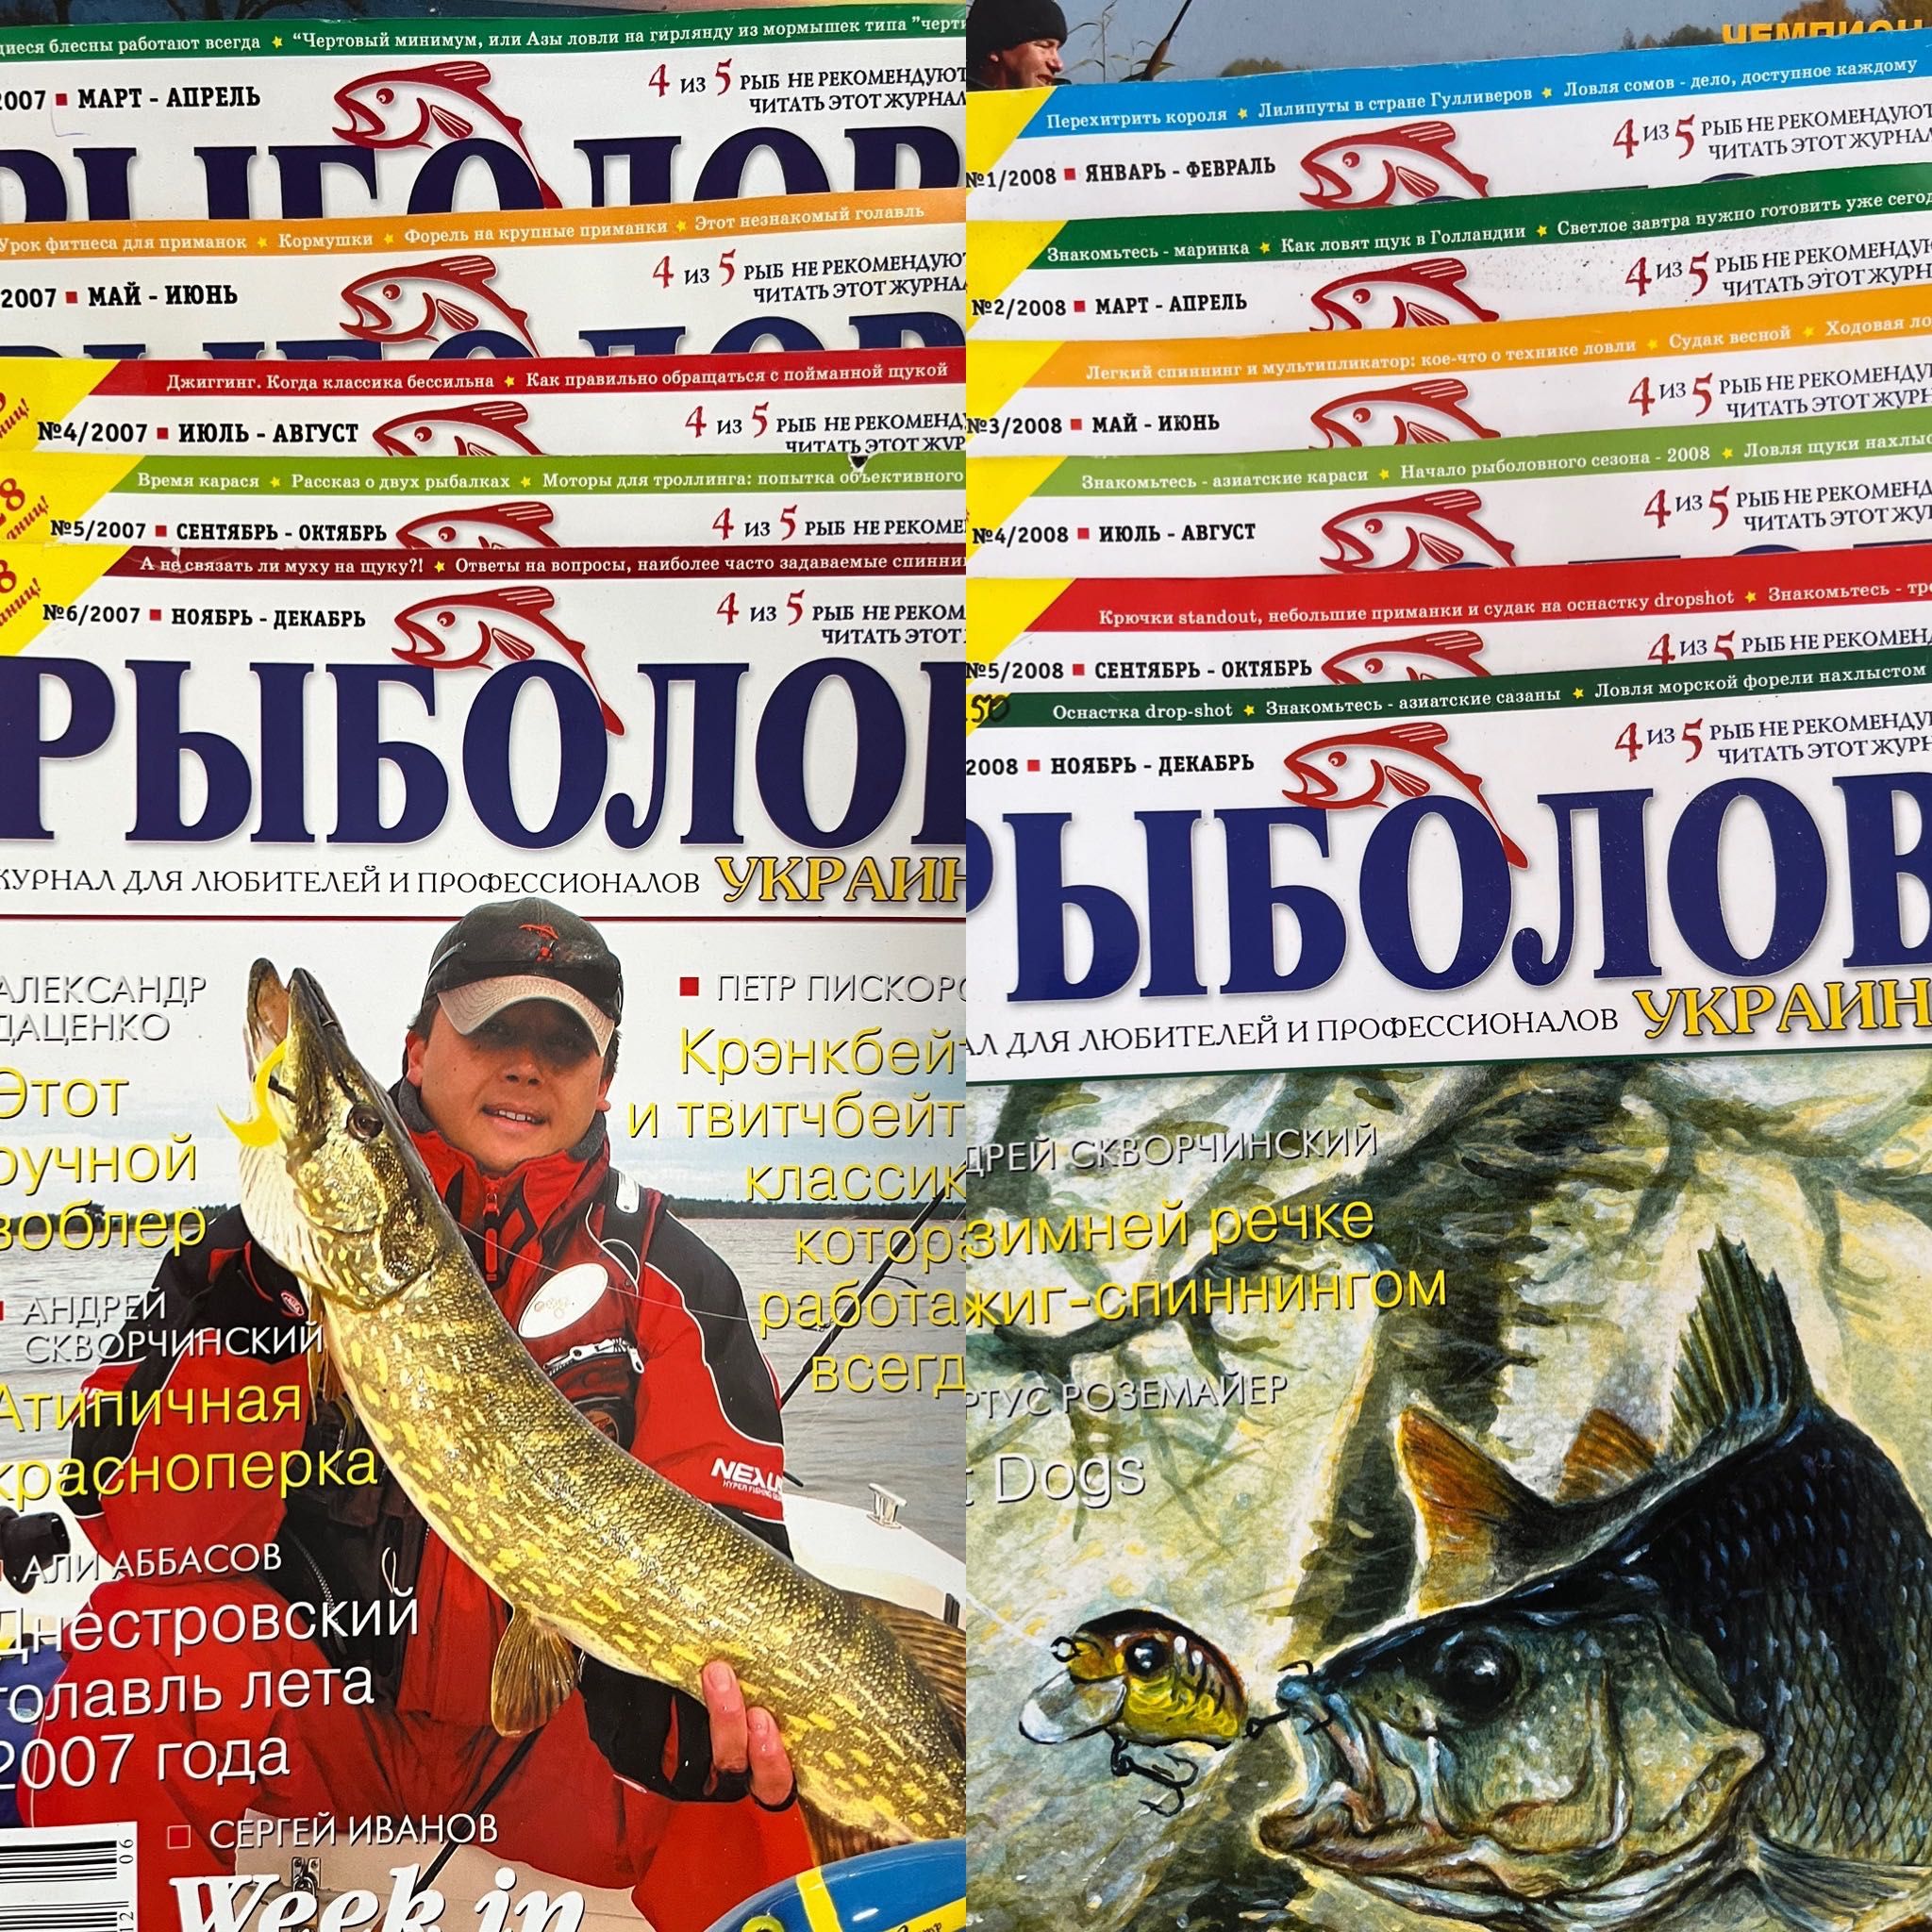 Журналы «Рыболов» и «Рыболовный мир»